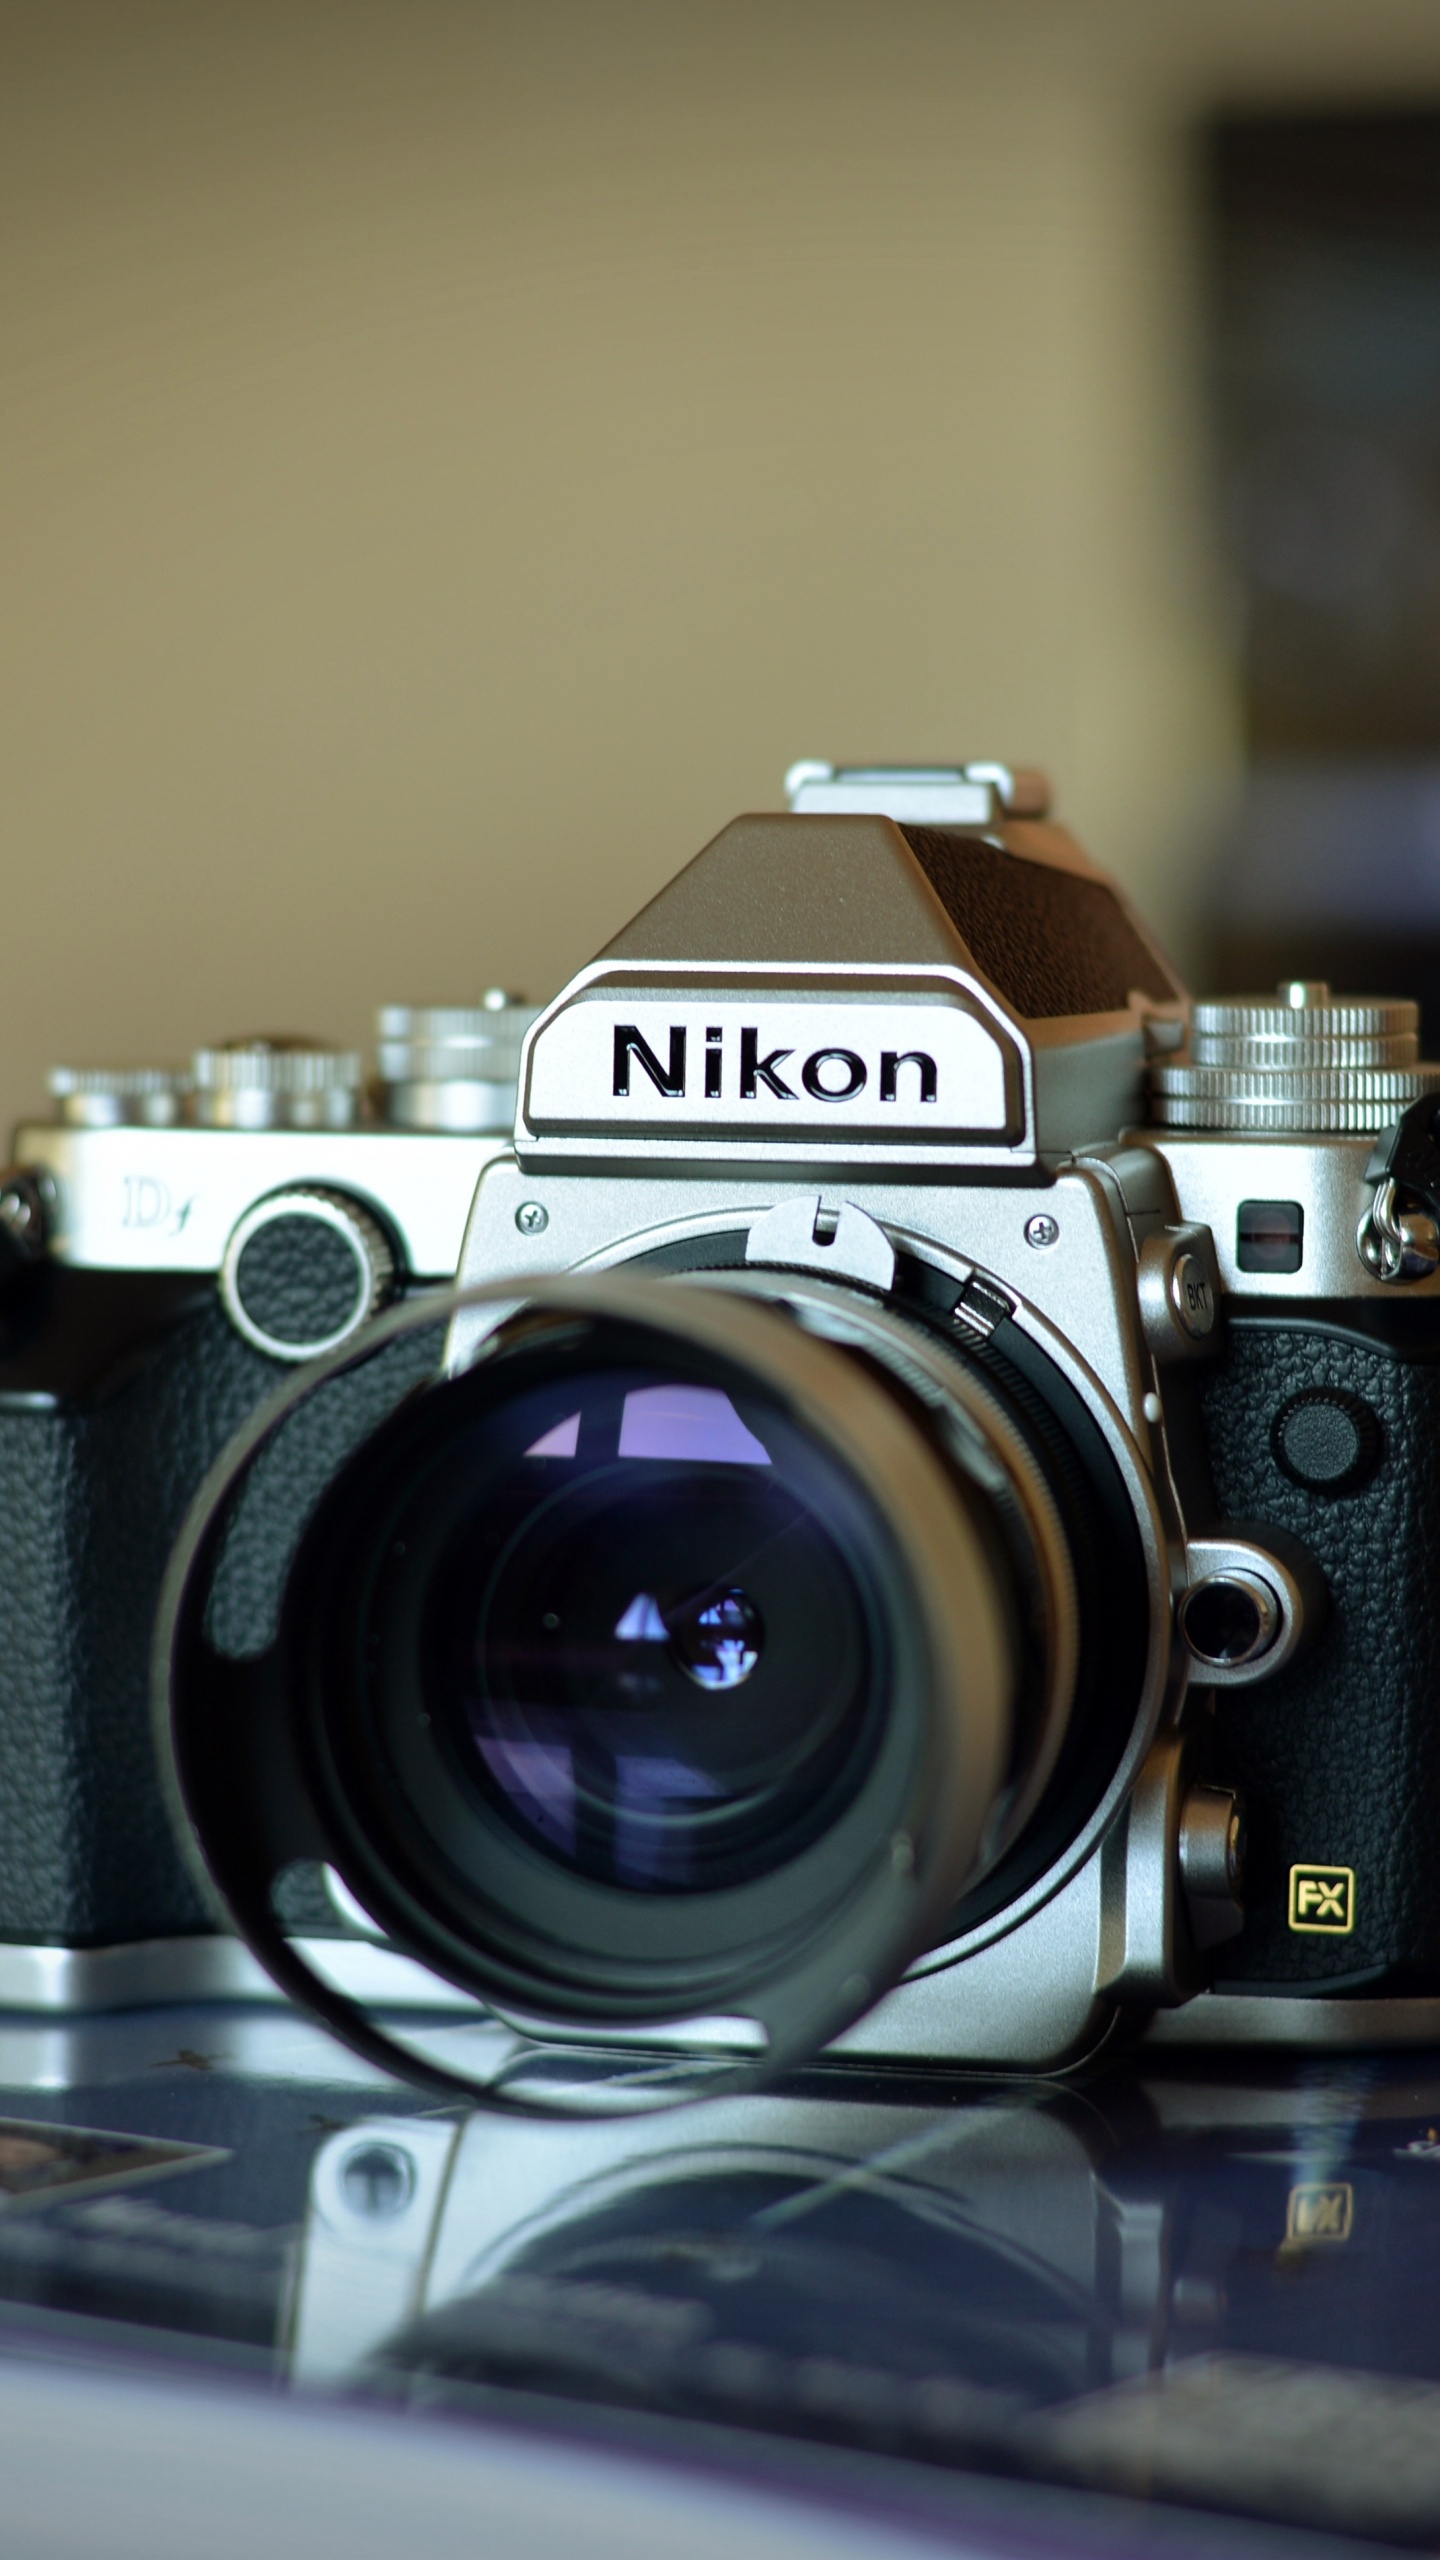 尼康, 光学照相机, 拍摄像头, 摄像机的附件, 数字照相机 壁纸 1440x2560 允许